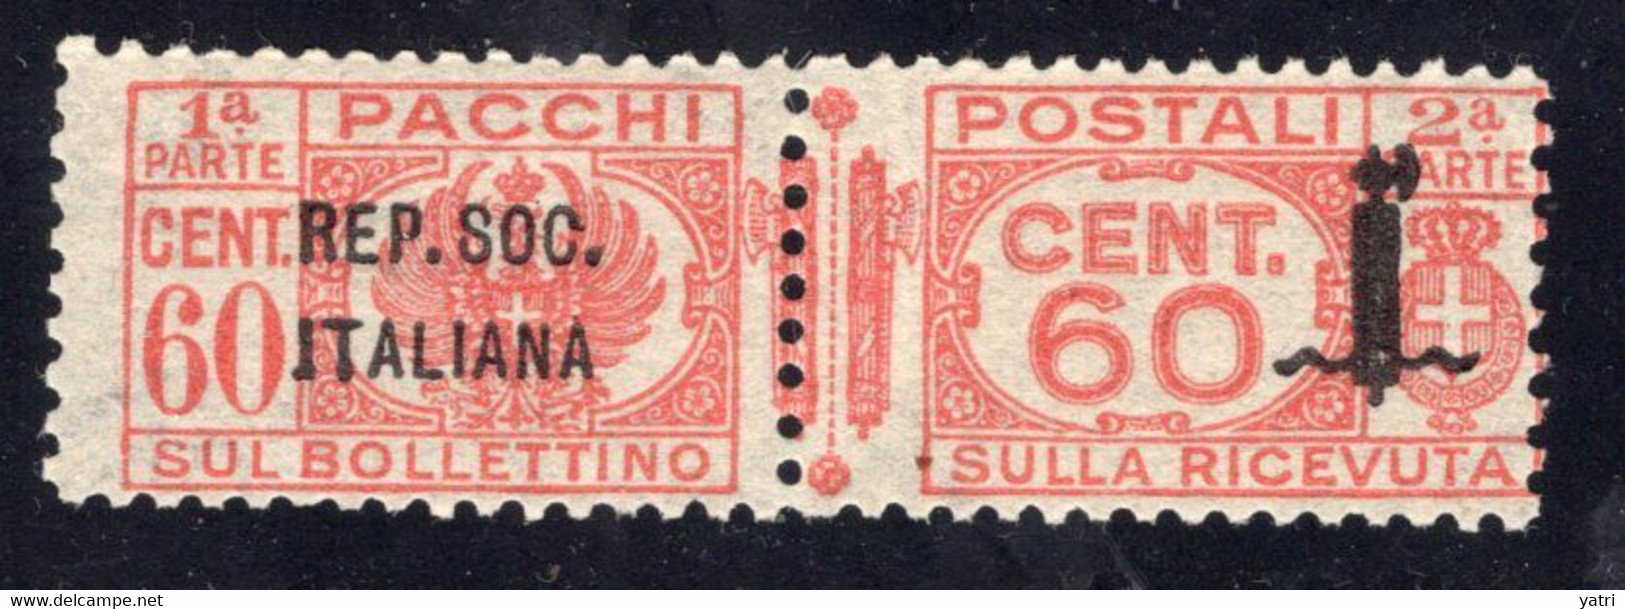 Repubblica Sociale (1944) - Pacchi Postali, 60 Cent. ** - Postal Parcels